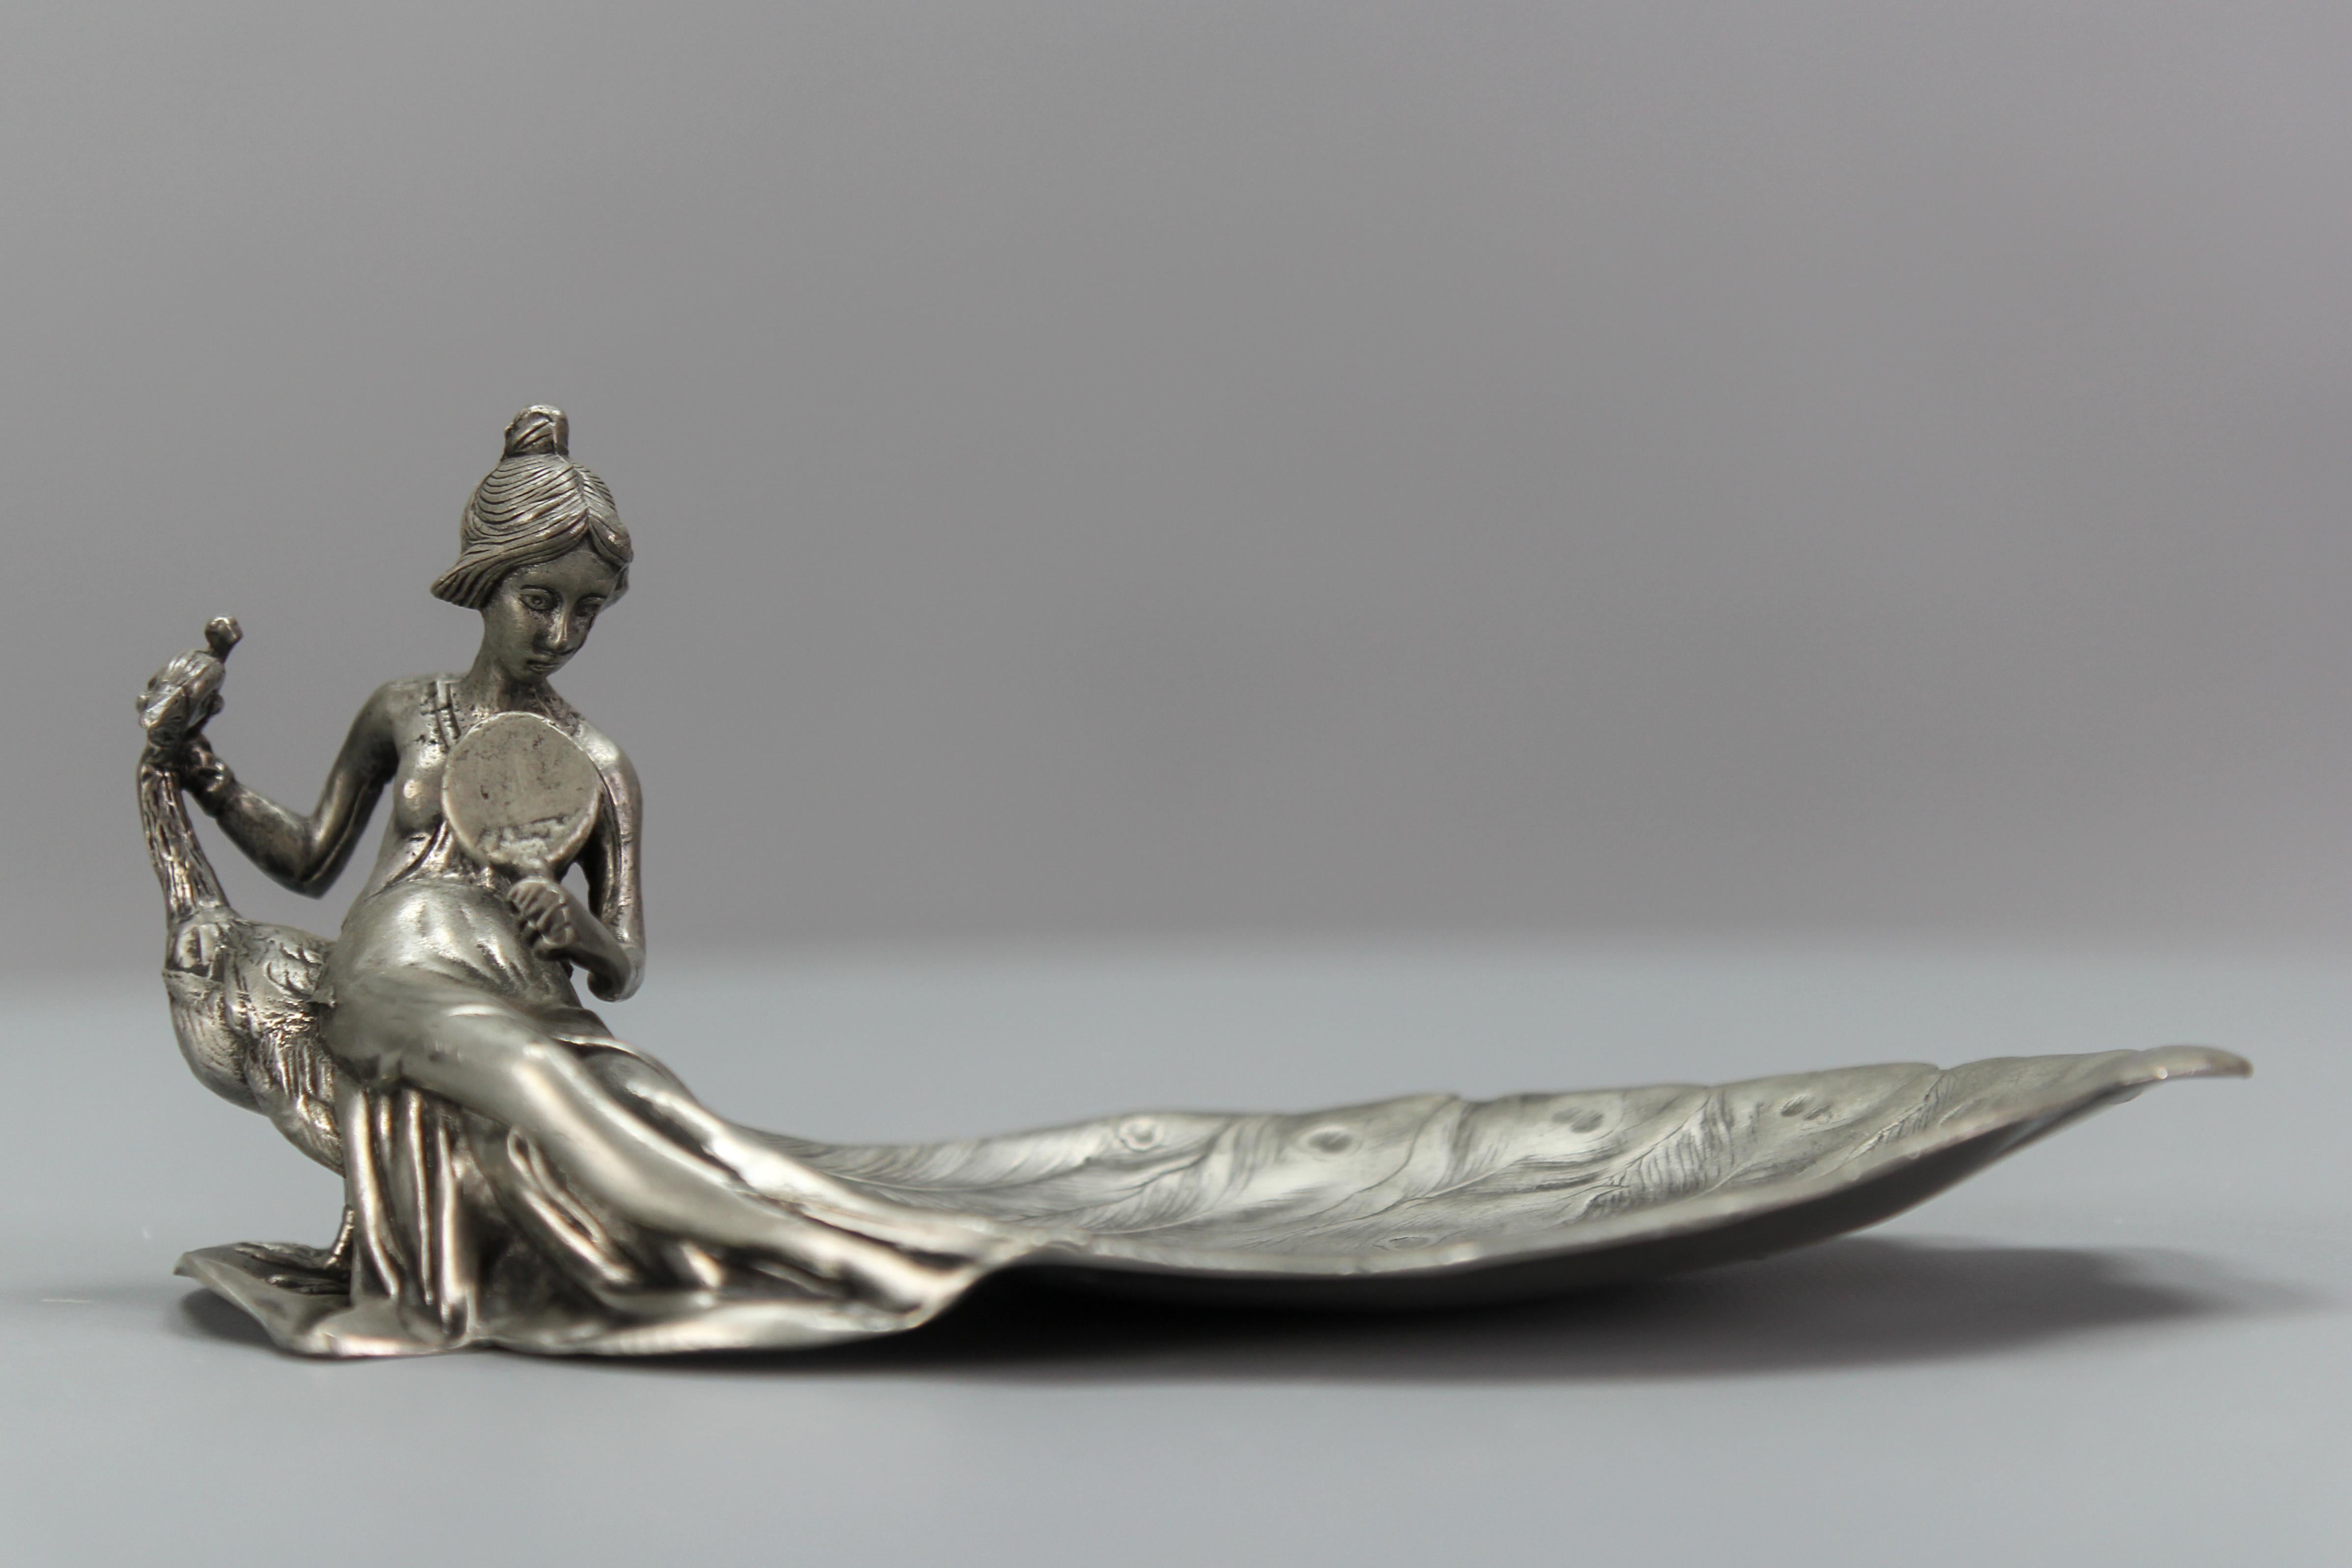 Französische Art Nouveau-Stil Zinn vide-poche oder Pin-Tablett eine Dame mit einem Pfau aus circa 1950er Jahren.
Dieses bezaubernde Karten- oder Pinnentablett, Vide-Poche, ist aus Zinn gefertigt und zeigt eine junge Dame, die in den Spiegel schaut